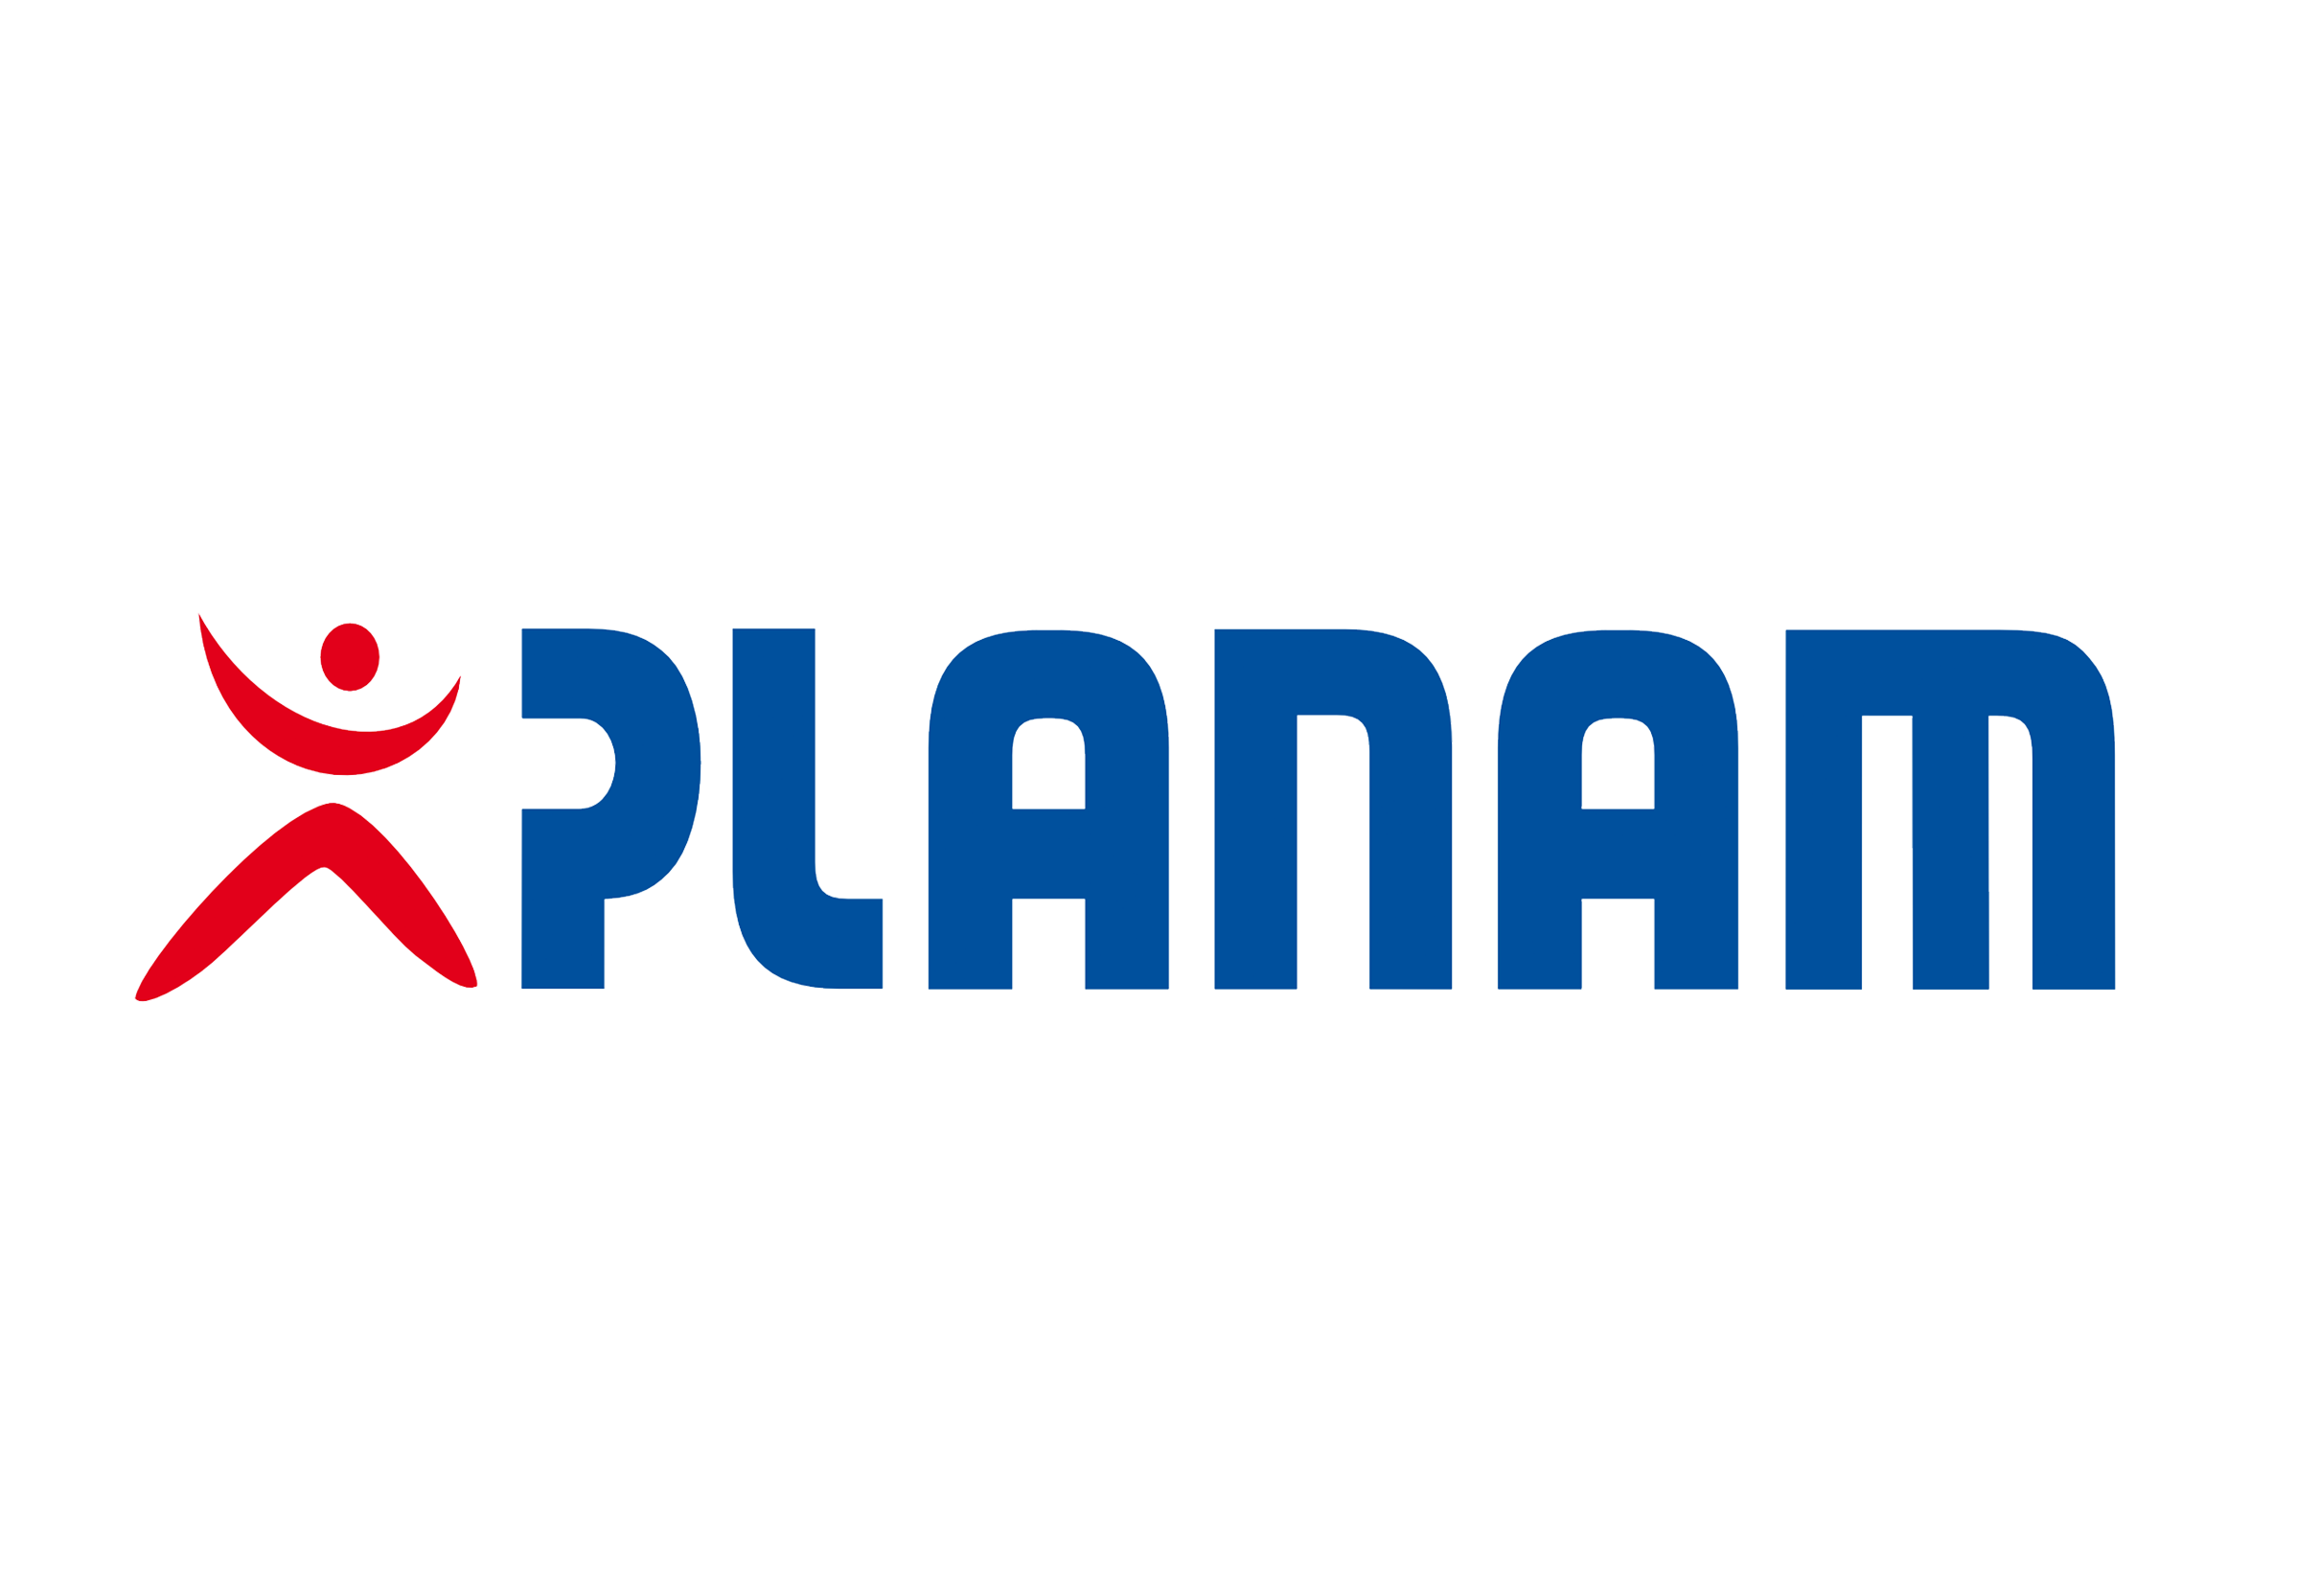 Logo von Planam